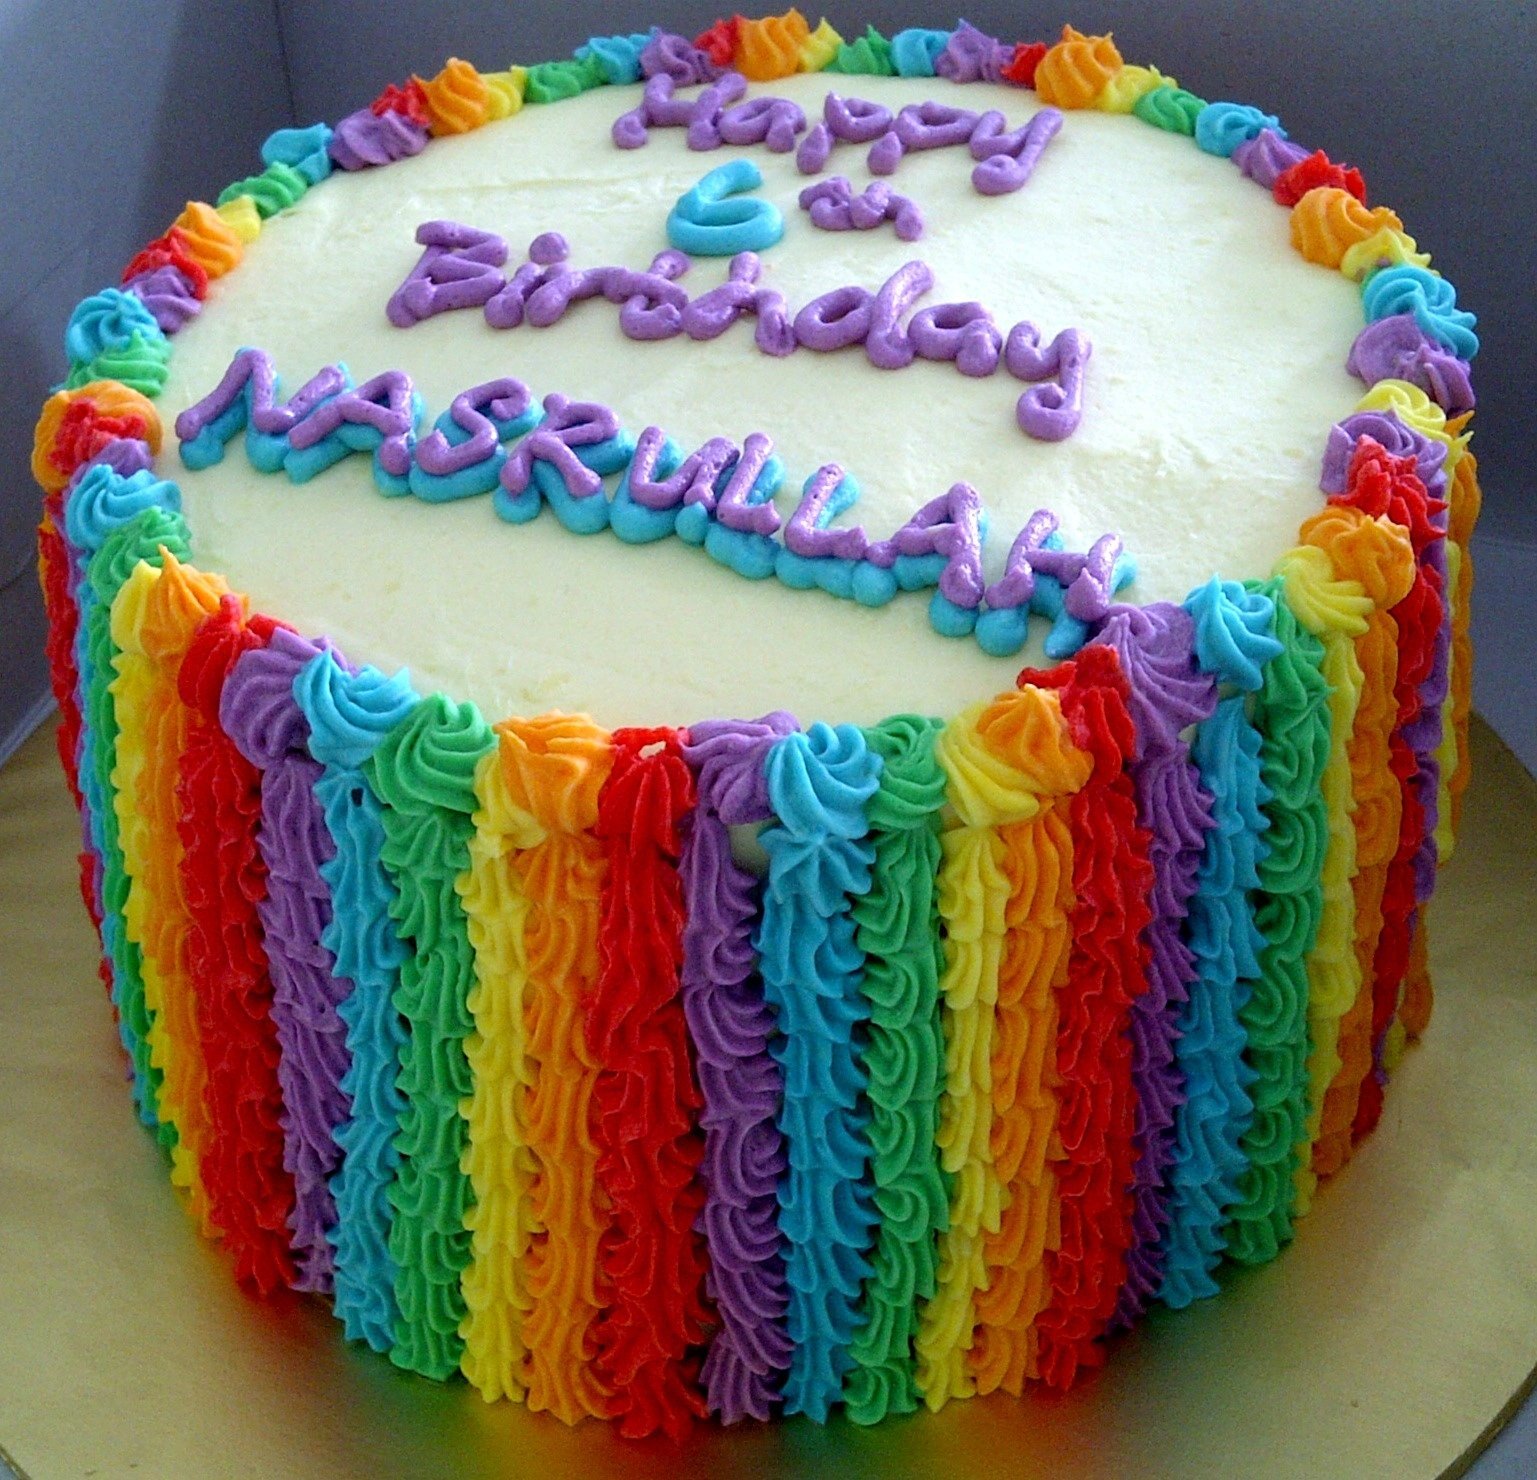 Разноцветный кремовый торт